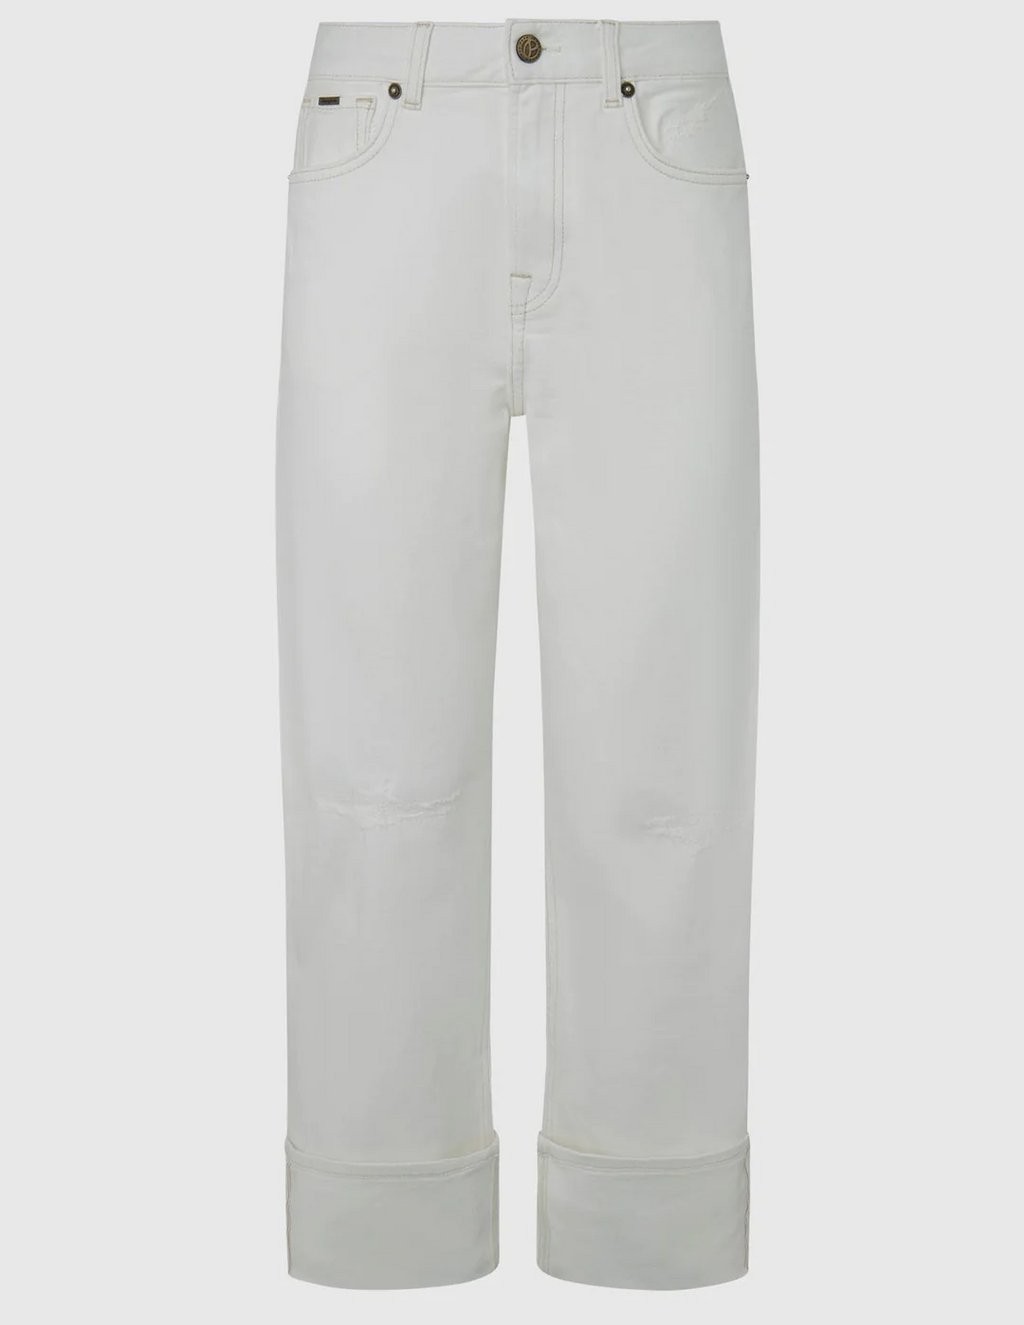 מכנסי ג'ינס של פפה ג'ינס ברזילי